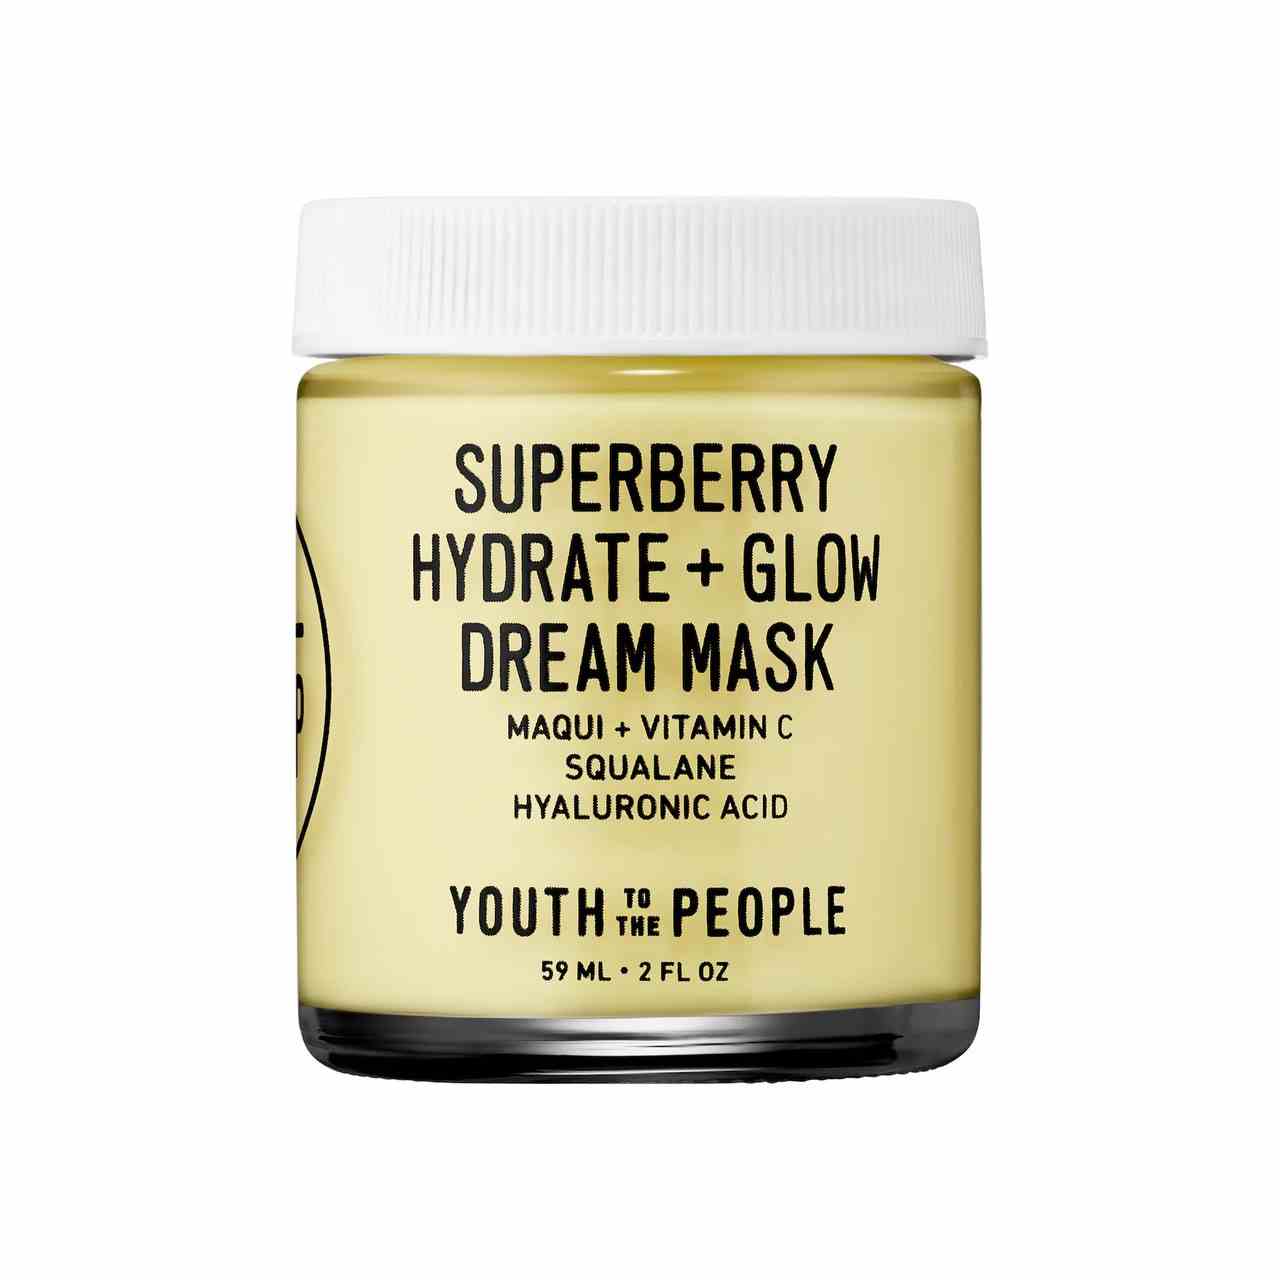 Youth to the People Superberry Hydrate and Glow Dream Mask transparentes Glas mit gelber Gesichtsmaske mit weißem Glas auf weißem Hintergrund